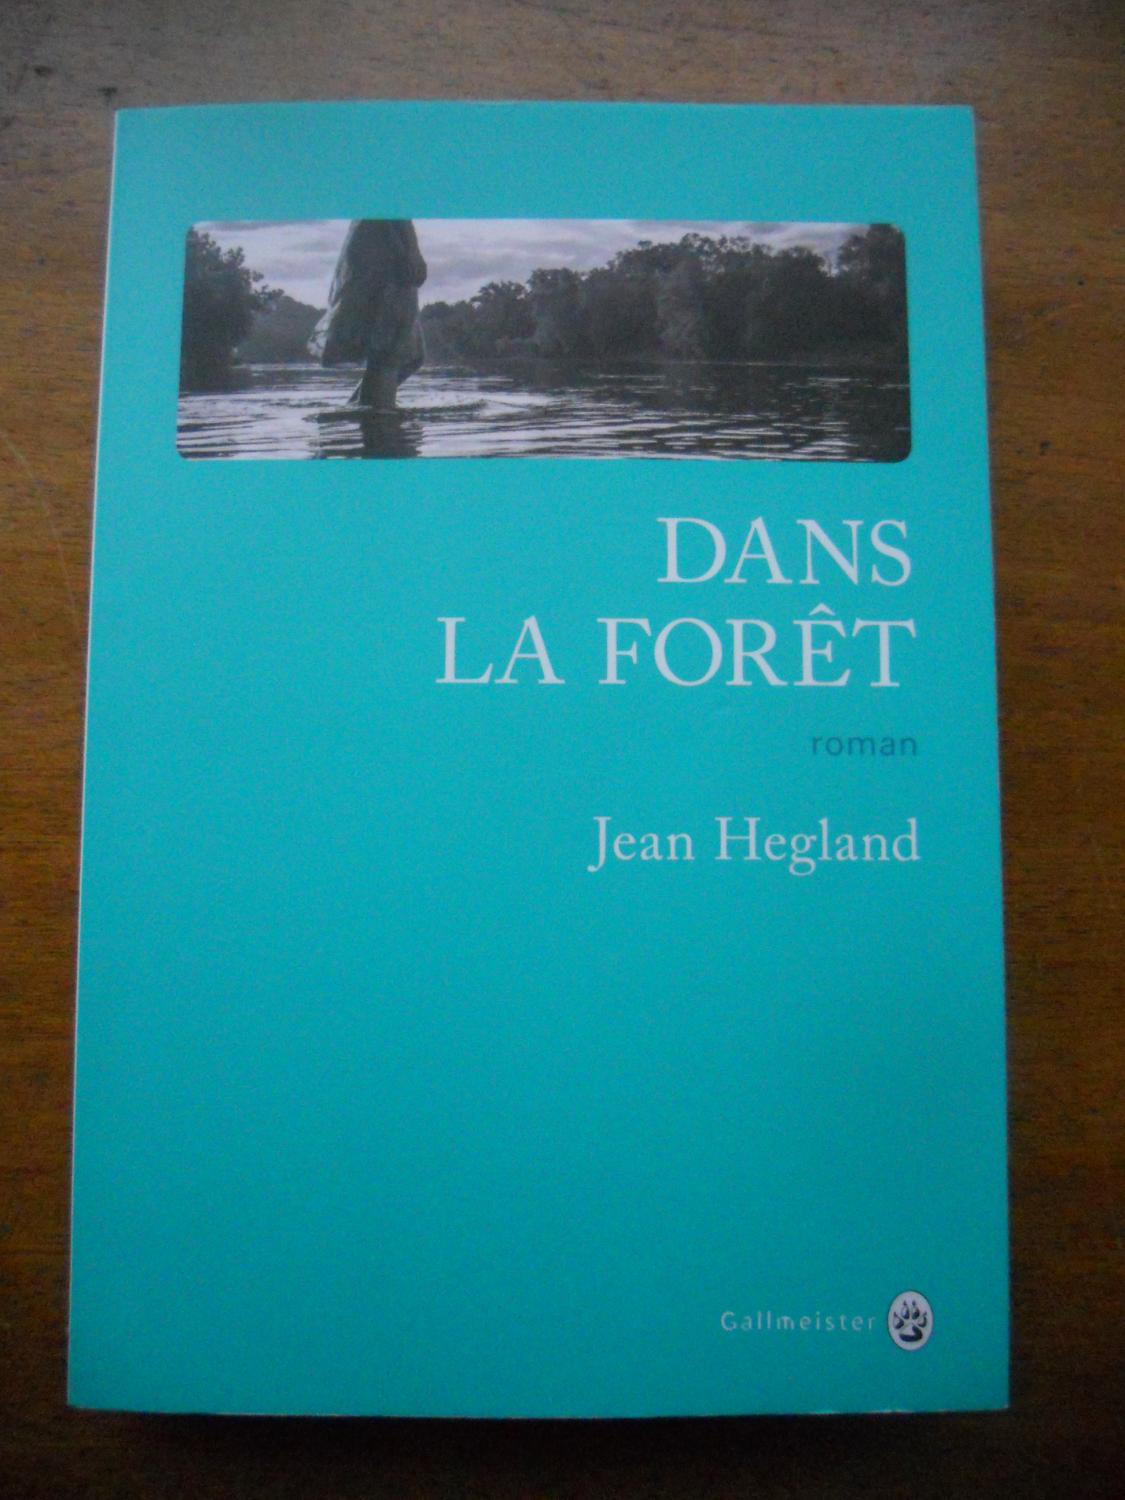 Dans la foret by Jean Hegland